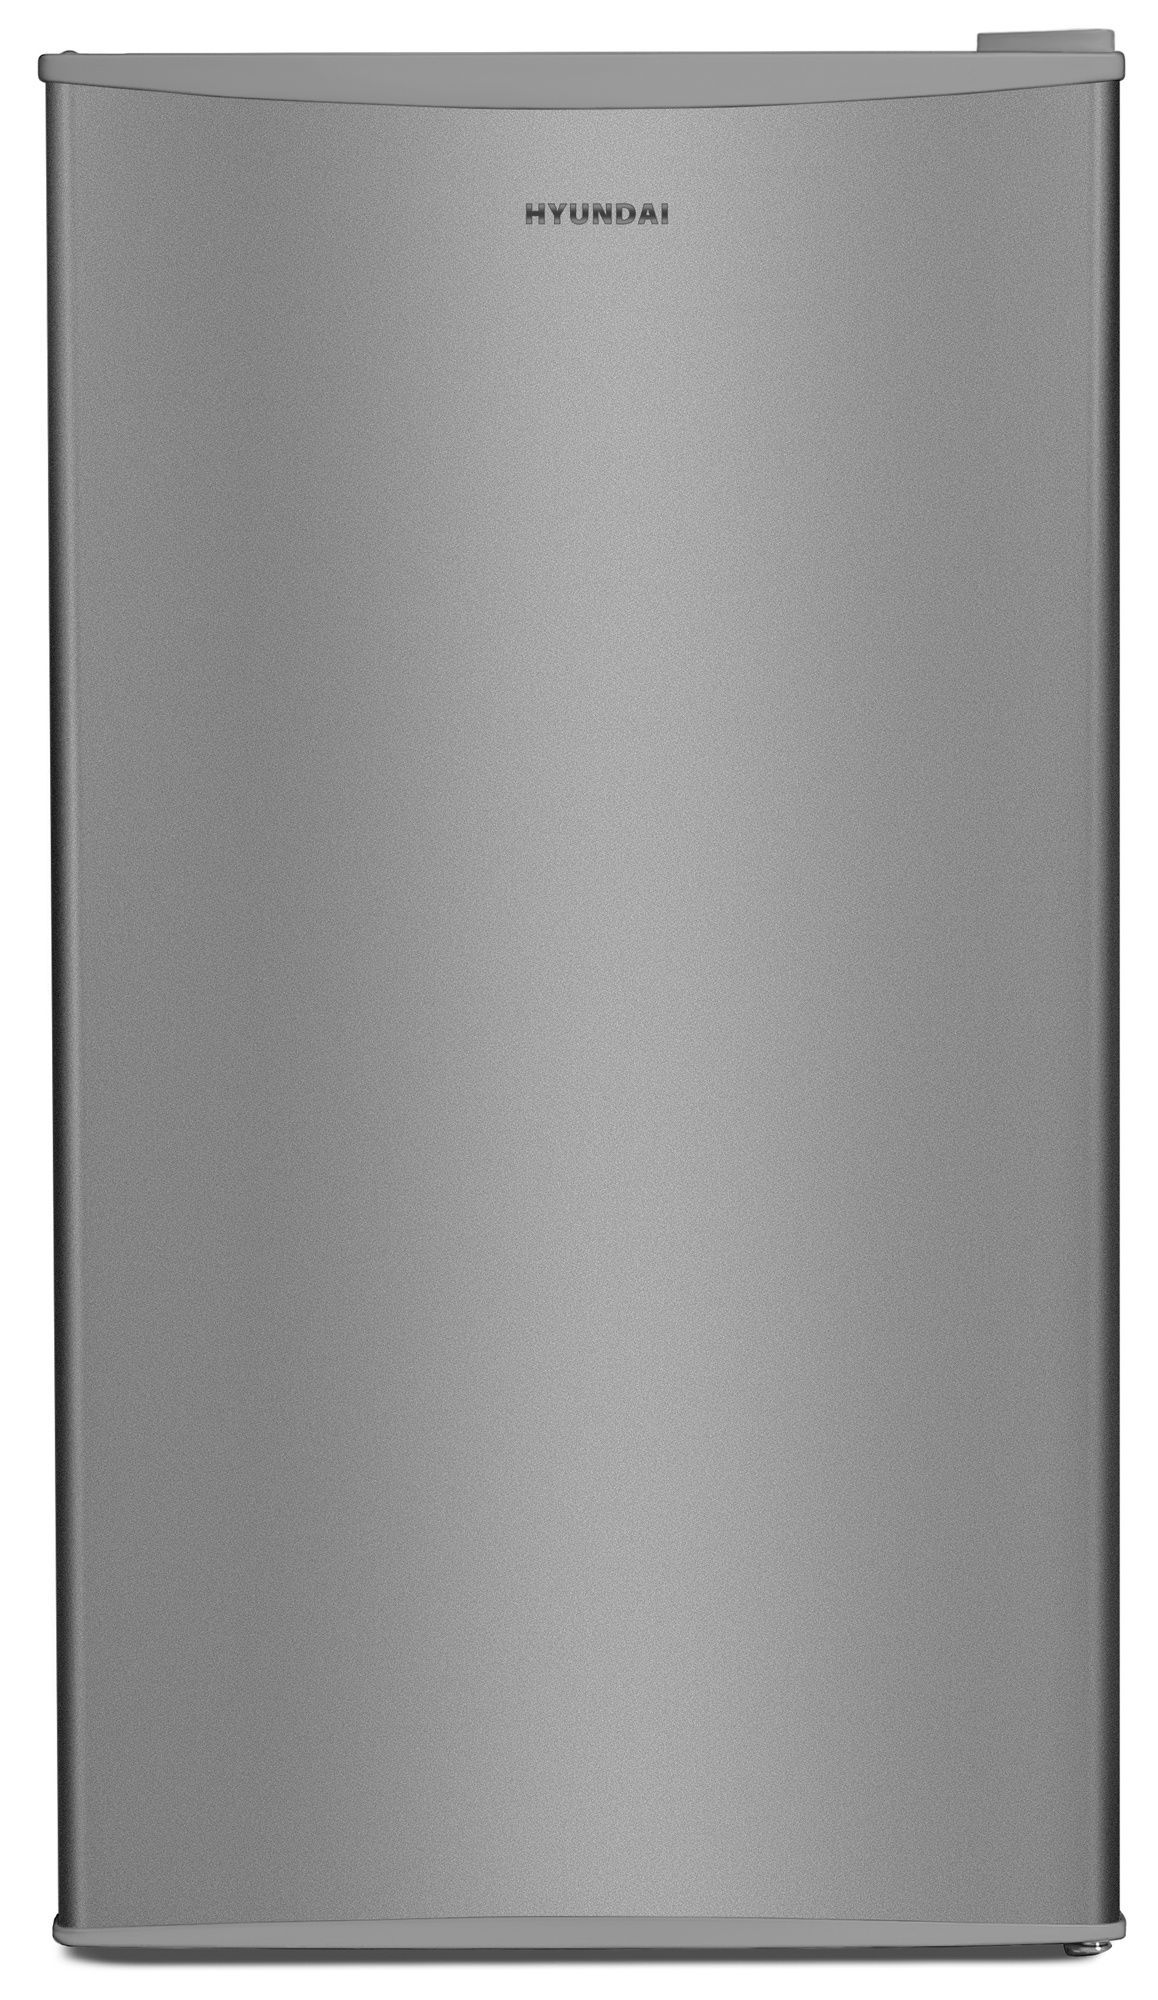 Холодильниик HYUNDAI CO1003 серебристый